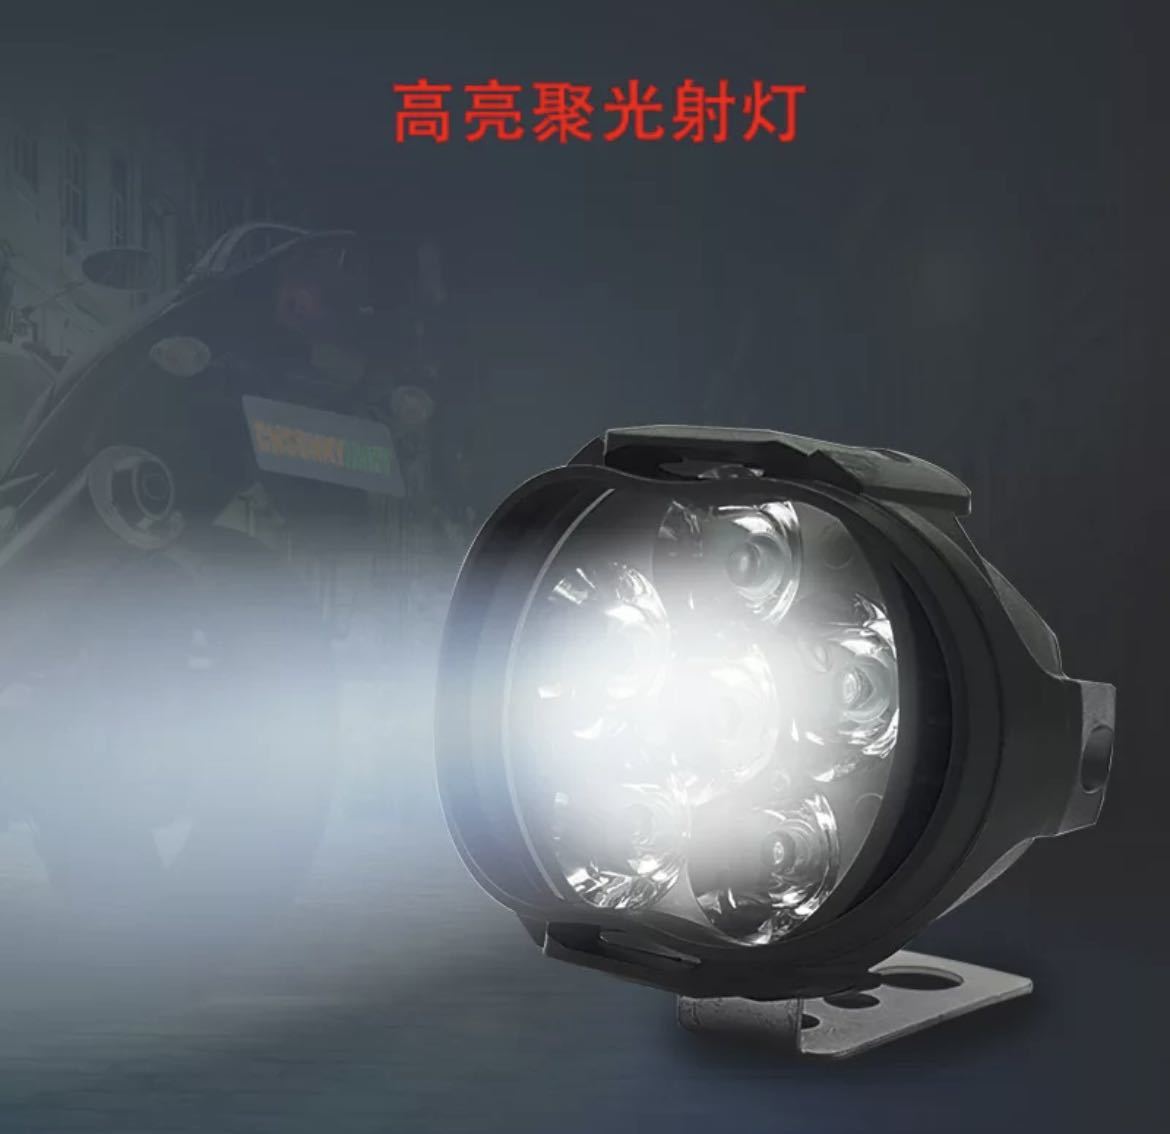 ☆新品☆ オートバイ 8 ワット LED ヘッドライト バイクスクーター ランプ フォグ ランニングライト_画像3